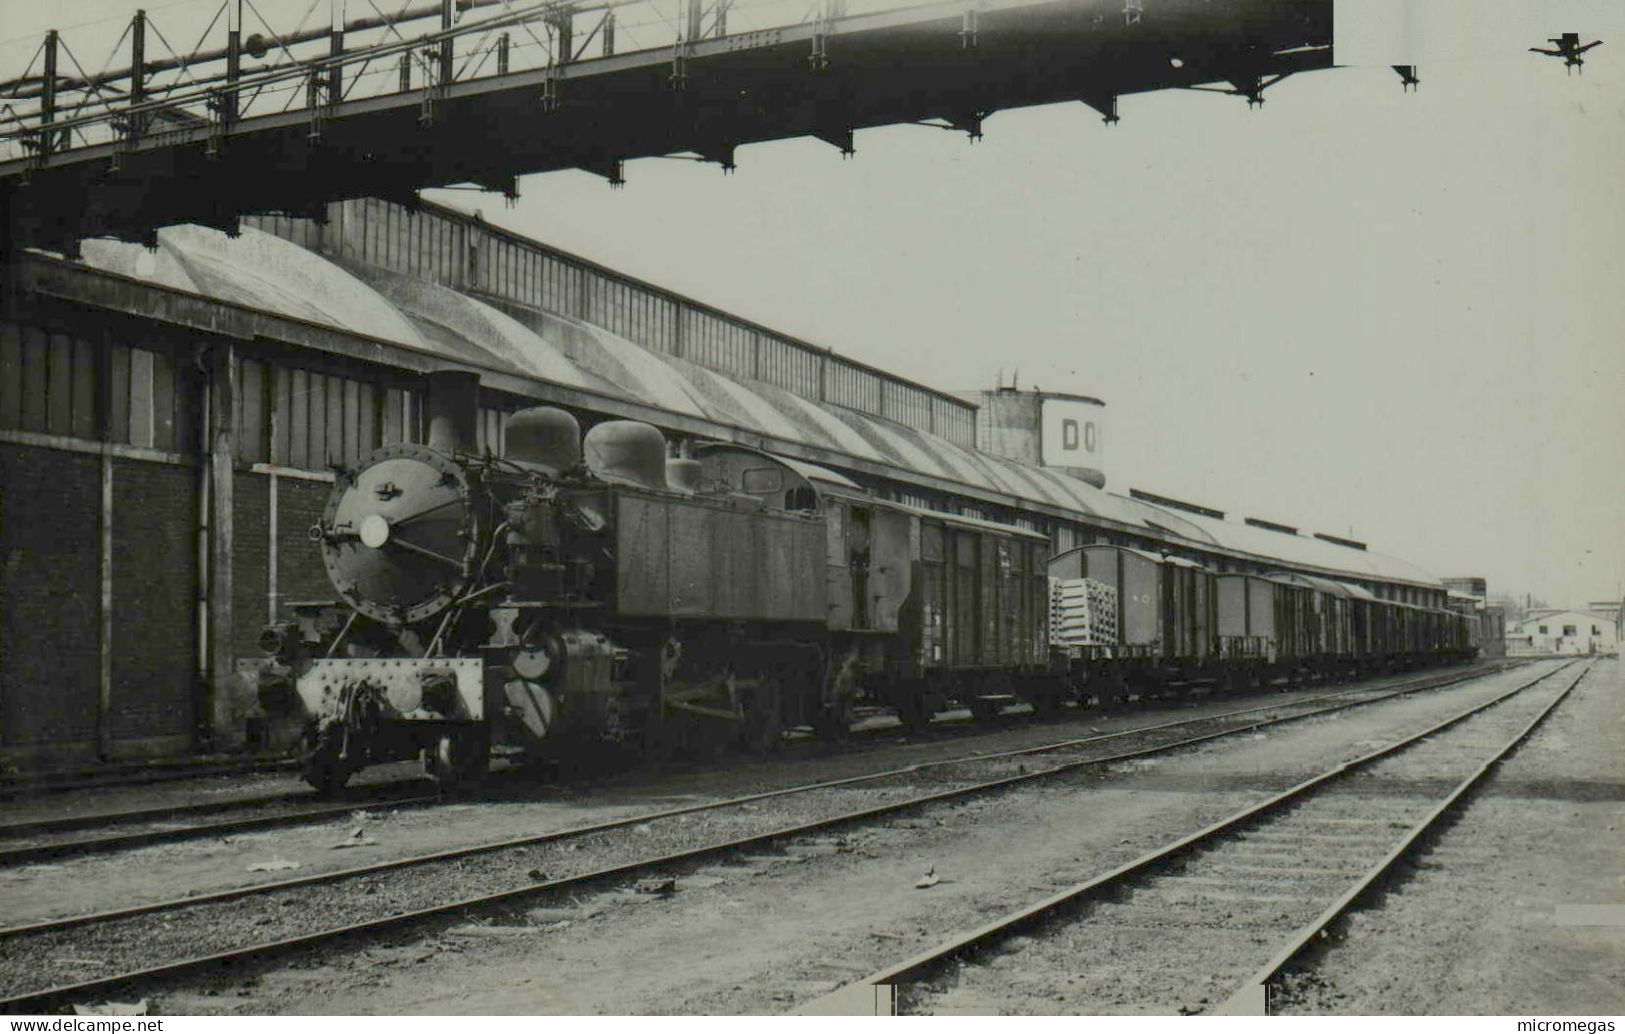 Douai - Halle à Marchandises, 24-3-1956 - Cliché J. Renaud - Trains